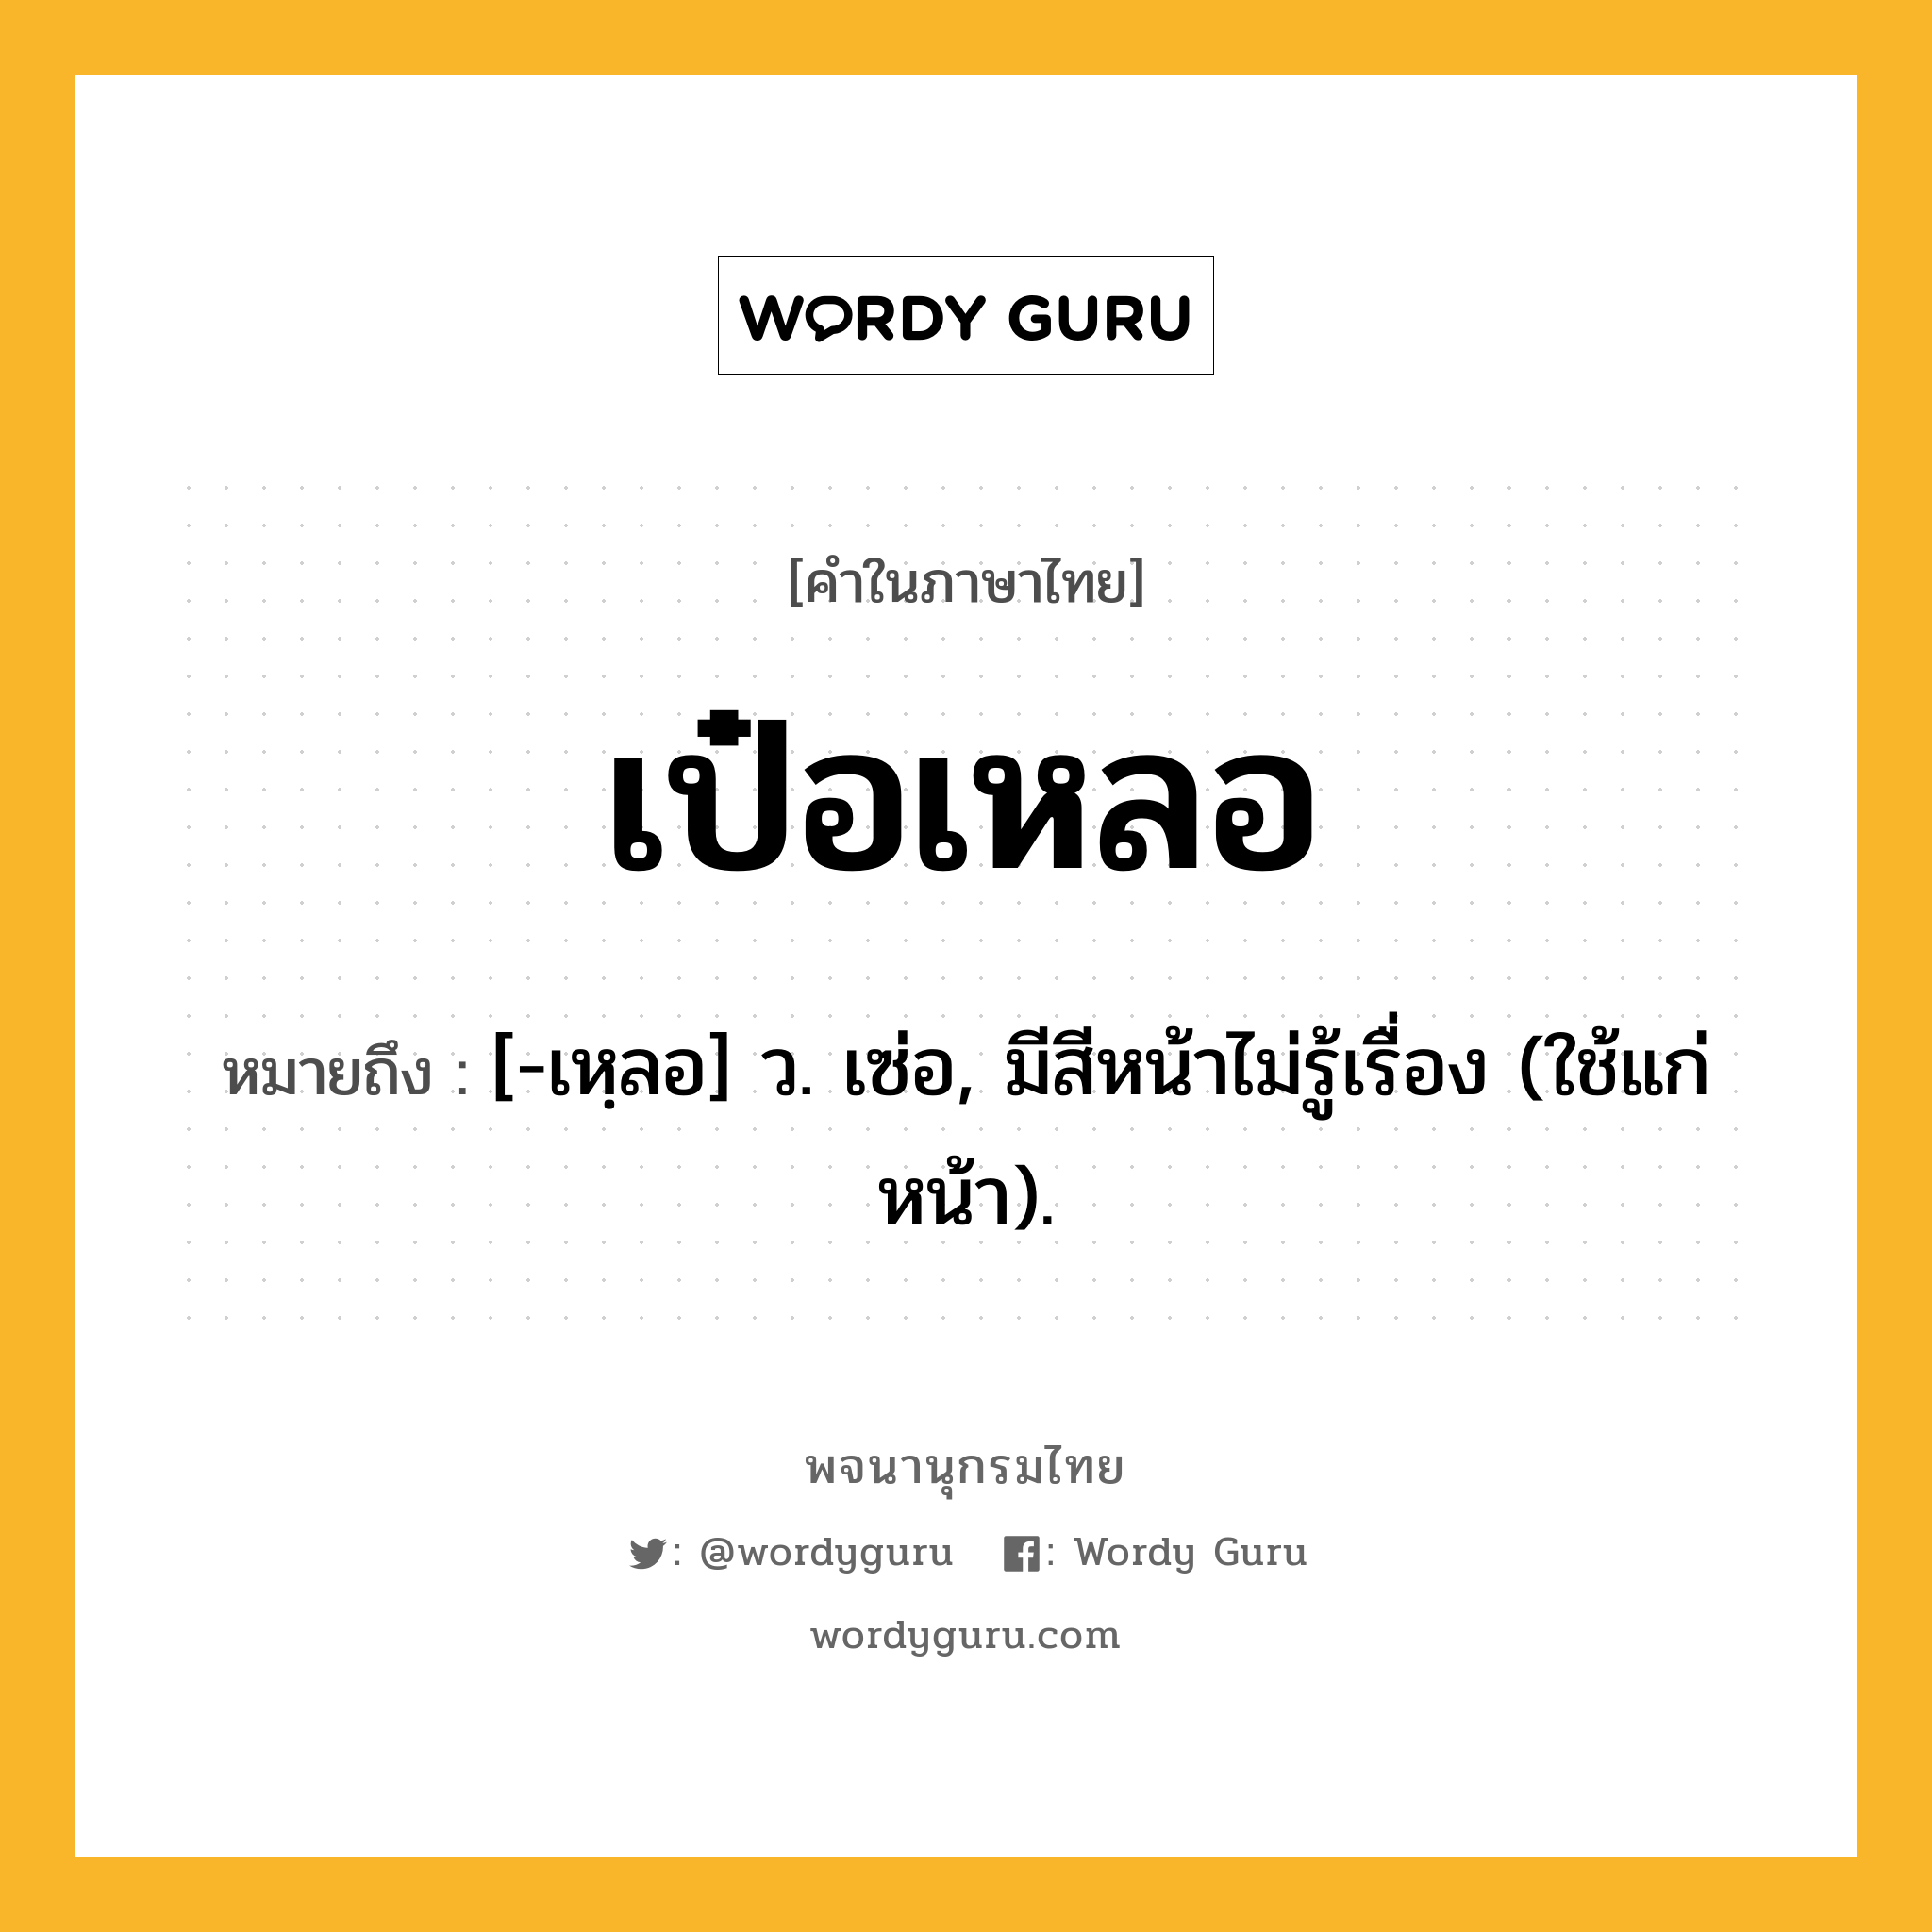 เป๋อเหลอ หมายถึงอะไร?, คำในภาษาไทย เป๋อเหลอ หมายถึง [-เหฺลอ] ว. เซ่อ, มีสีหน้าไม่รู้เรื่อง (ใช้แก่หน้า).